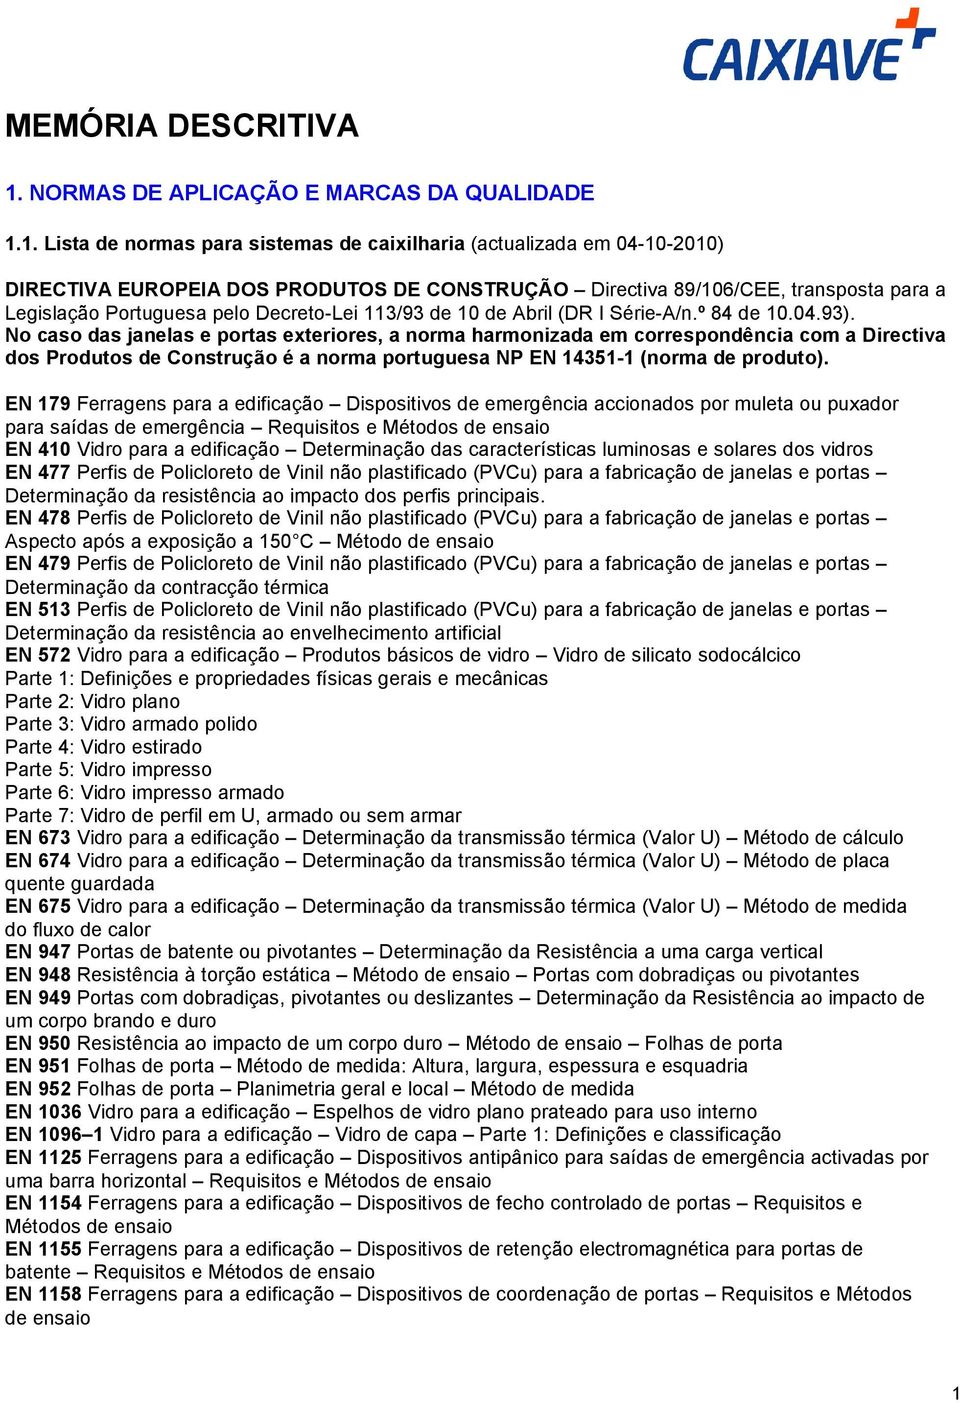 1. Lista de normas para sistemas de caixilharia (actualizada em 04-10-2010) DIRECTIVA EUROPEIA DOS PRODUTOS DE CONSTRUÇÃO Directiva 89/106/CEE, transposta para a Legislação Portuguesa pelo